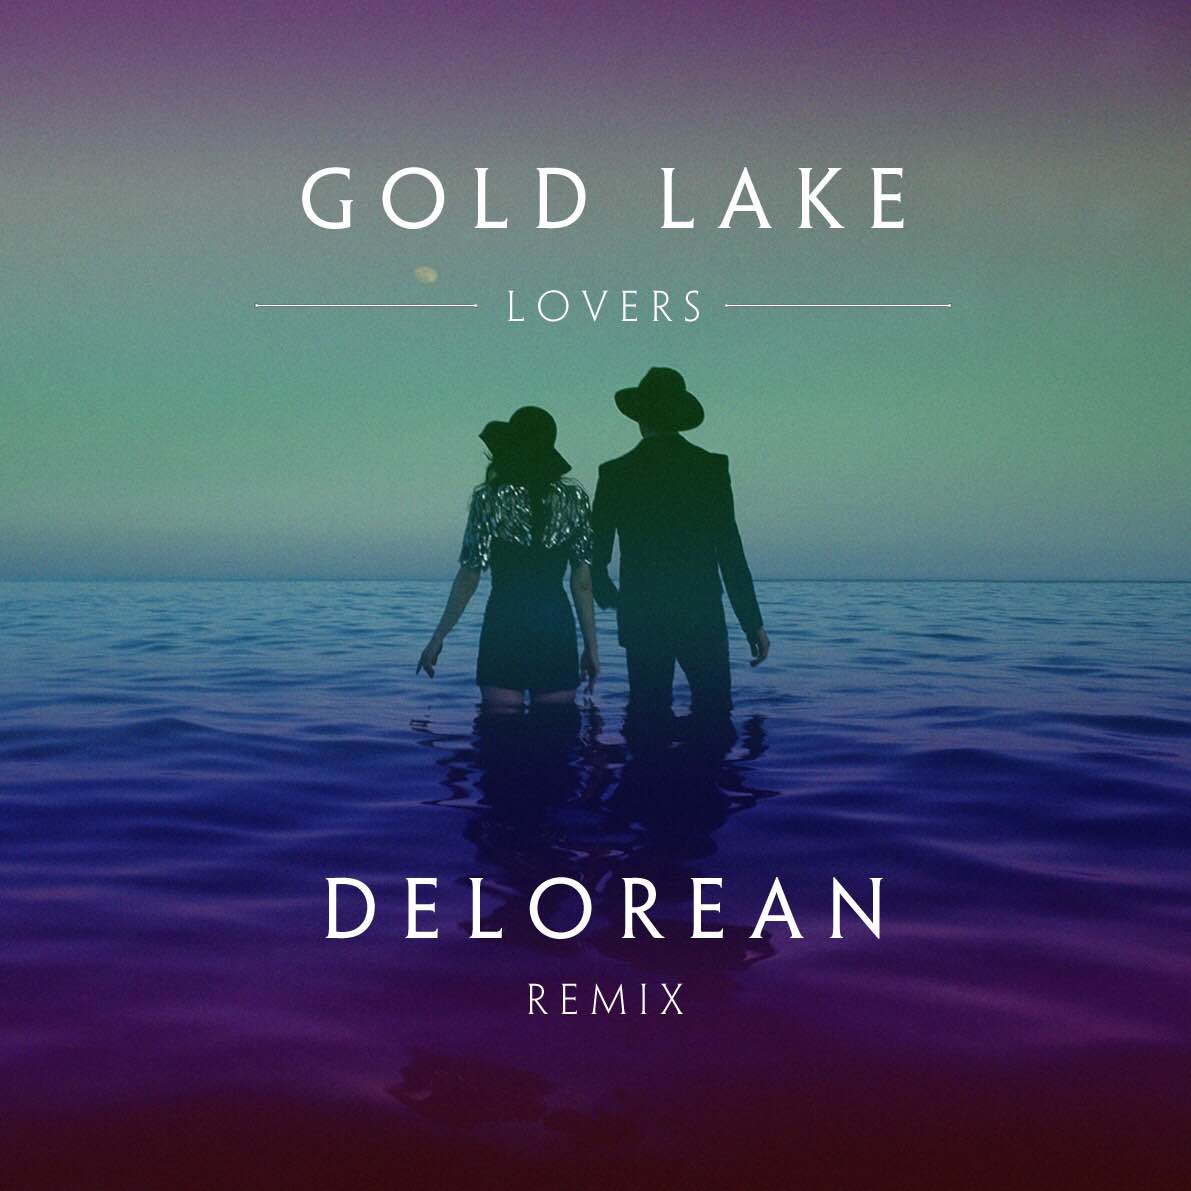 Gold Lake Delorean Remix